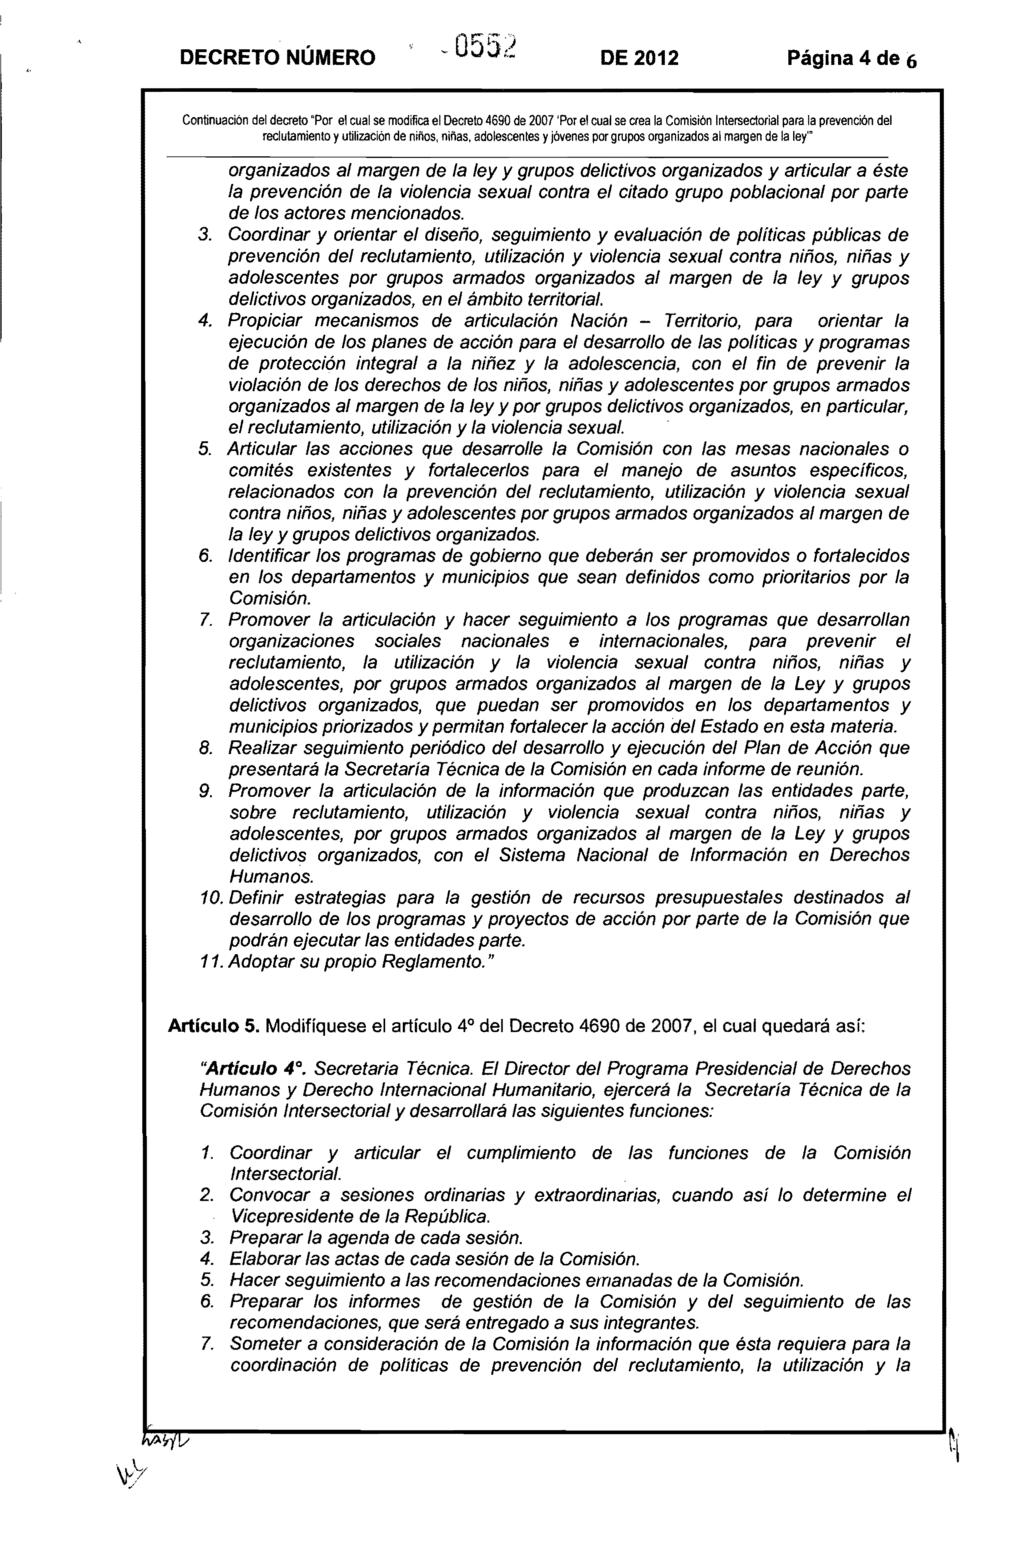 DECRETO NÚMERO DE 2012 Página 4 de 6 Continuación del decreto "Por el cual se modifica el Decreto 4690 de 2007 'Por el cual se crea la Comisión Intersectorial para la prevención del reclutamiento y